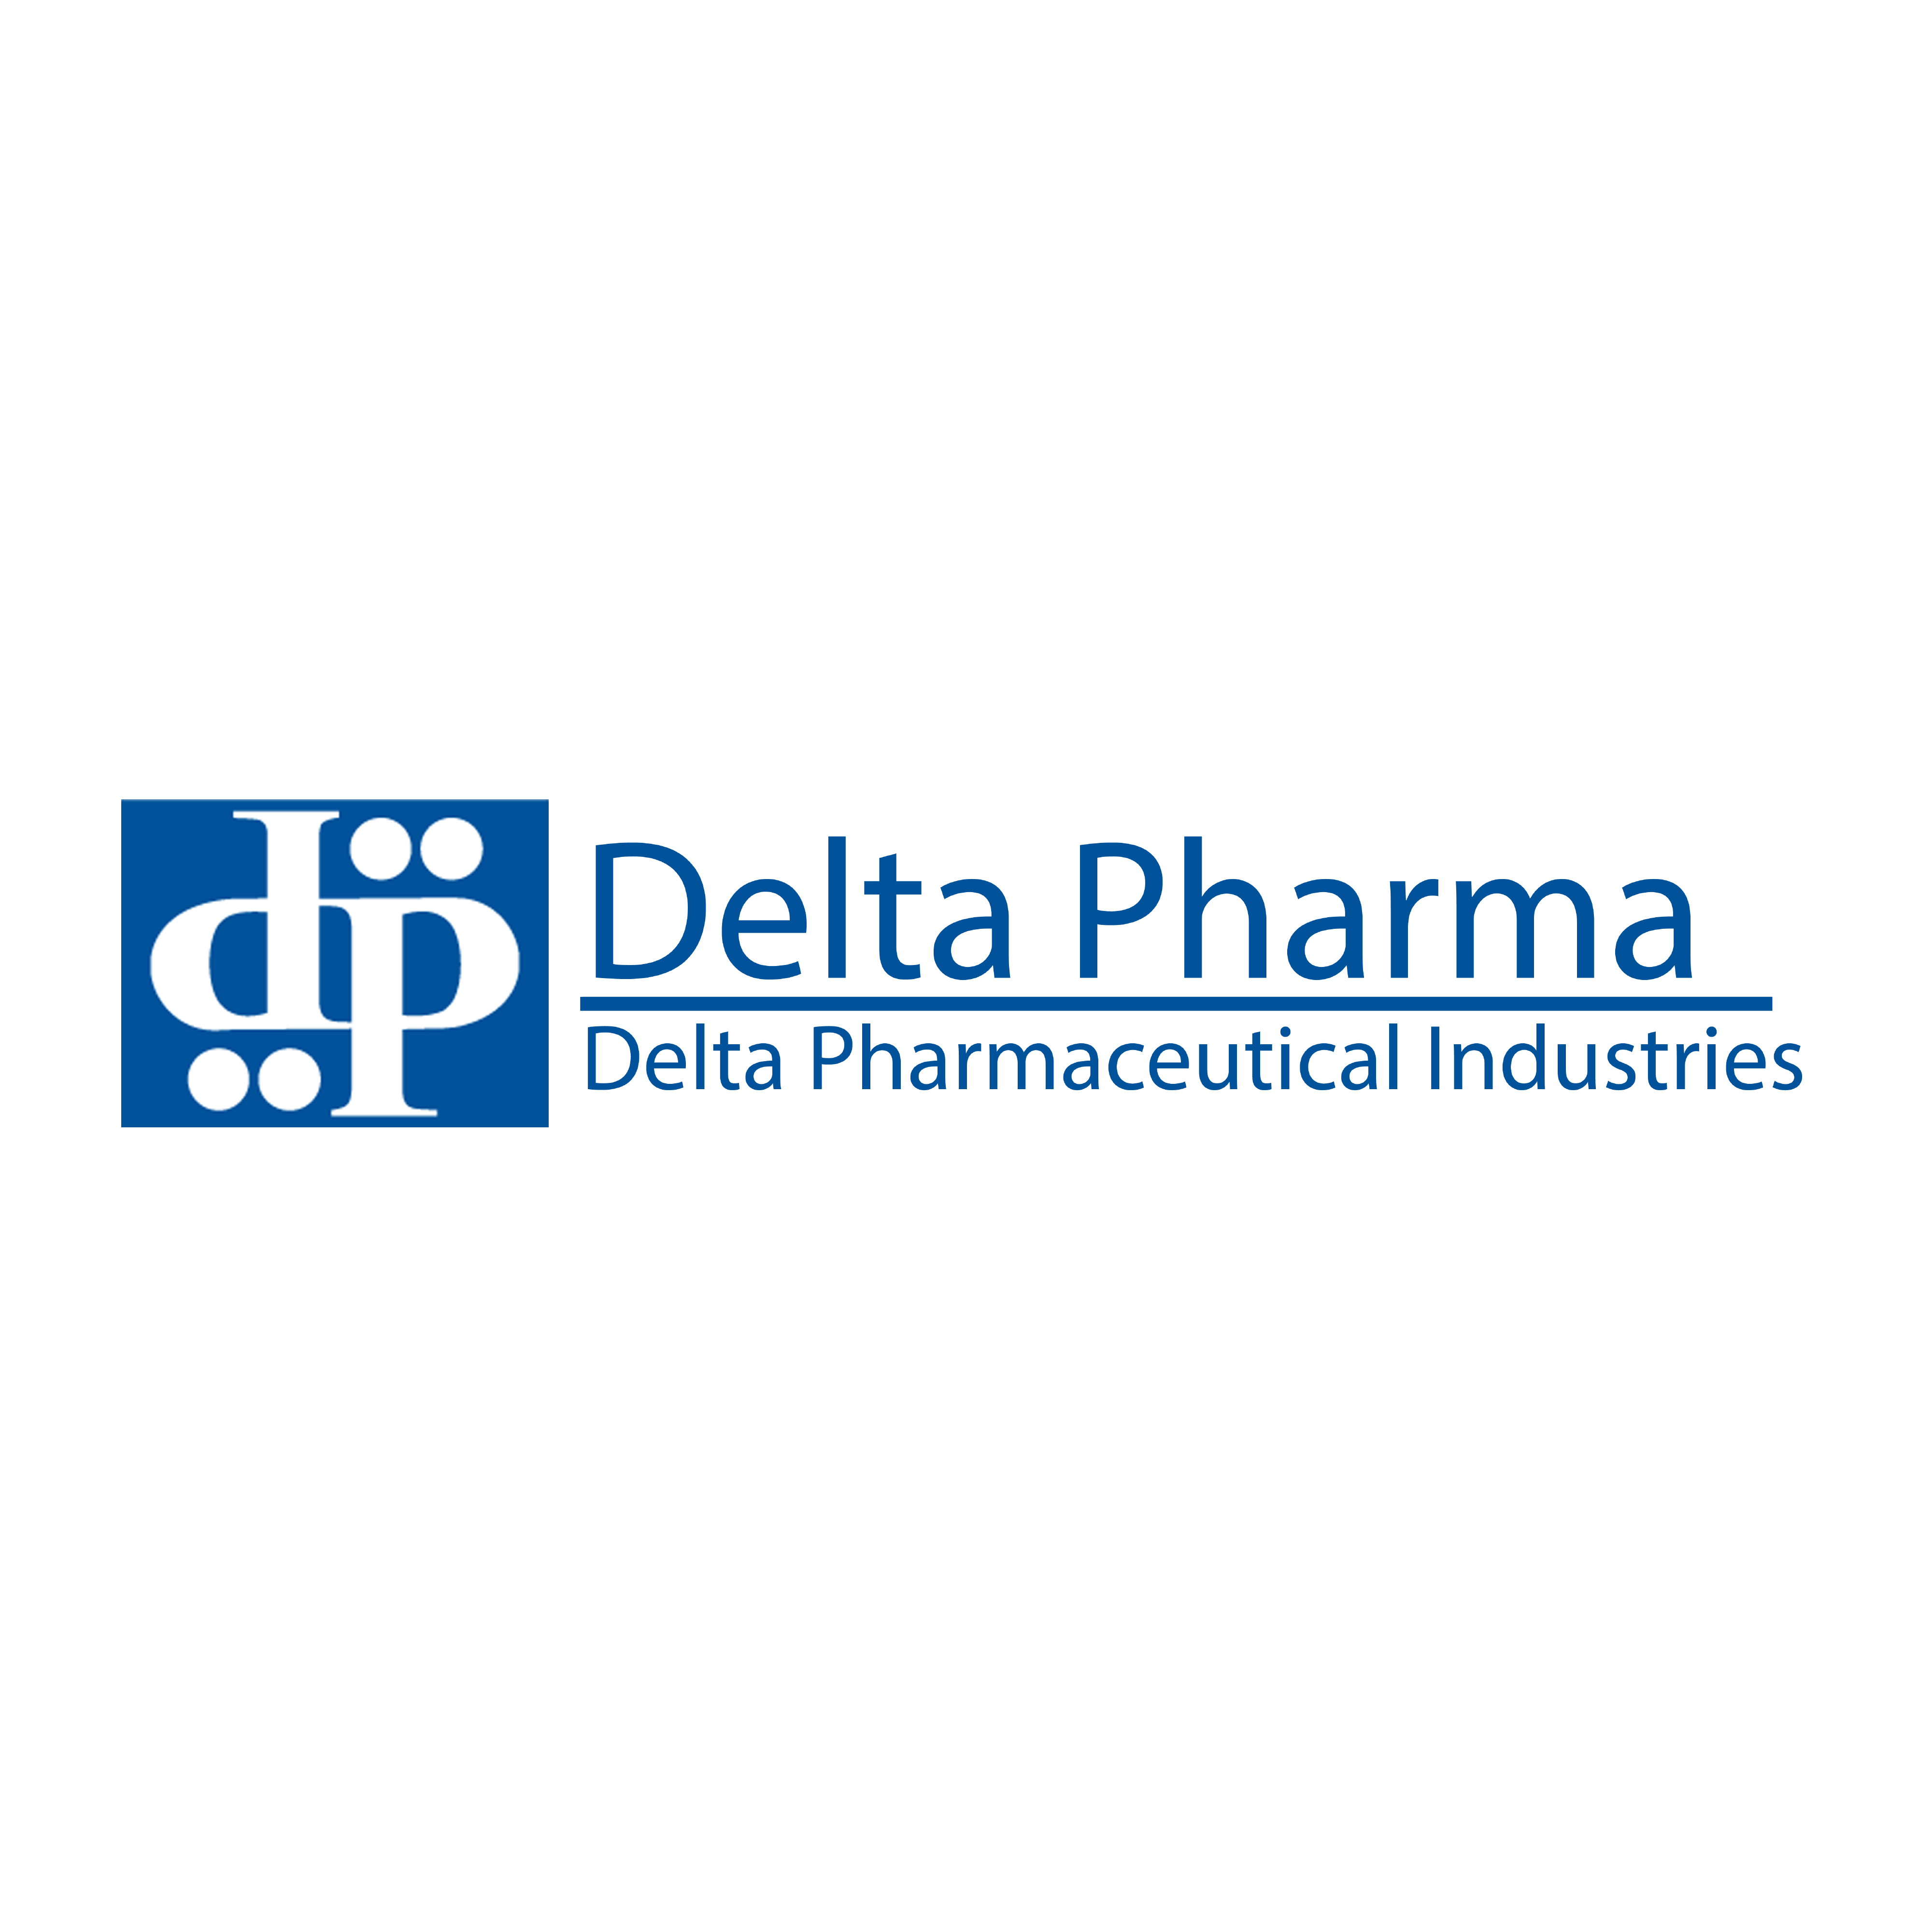 Delta Pharma logo